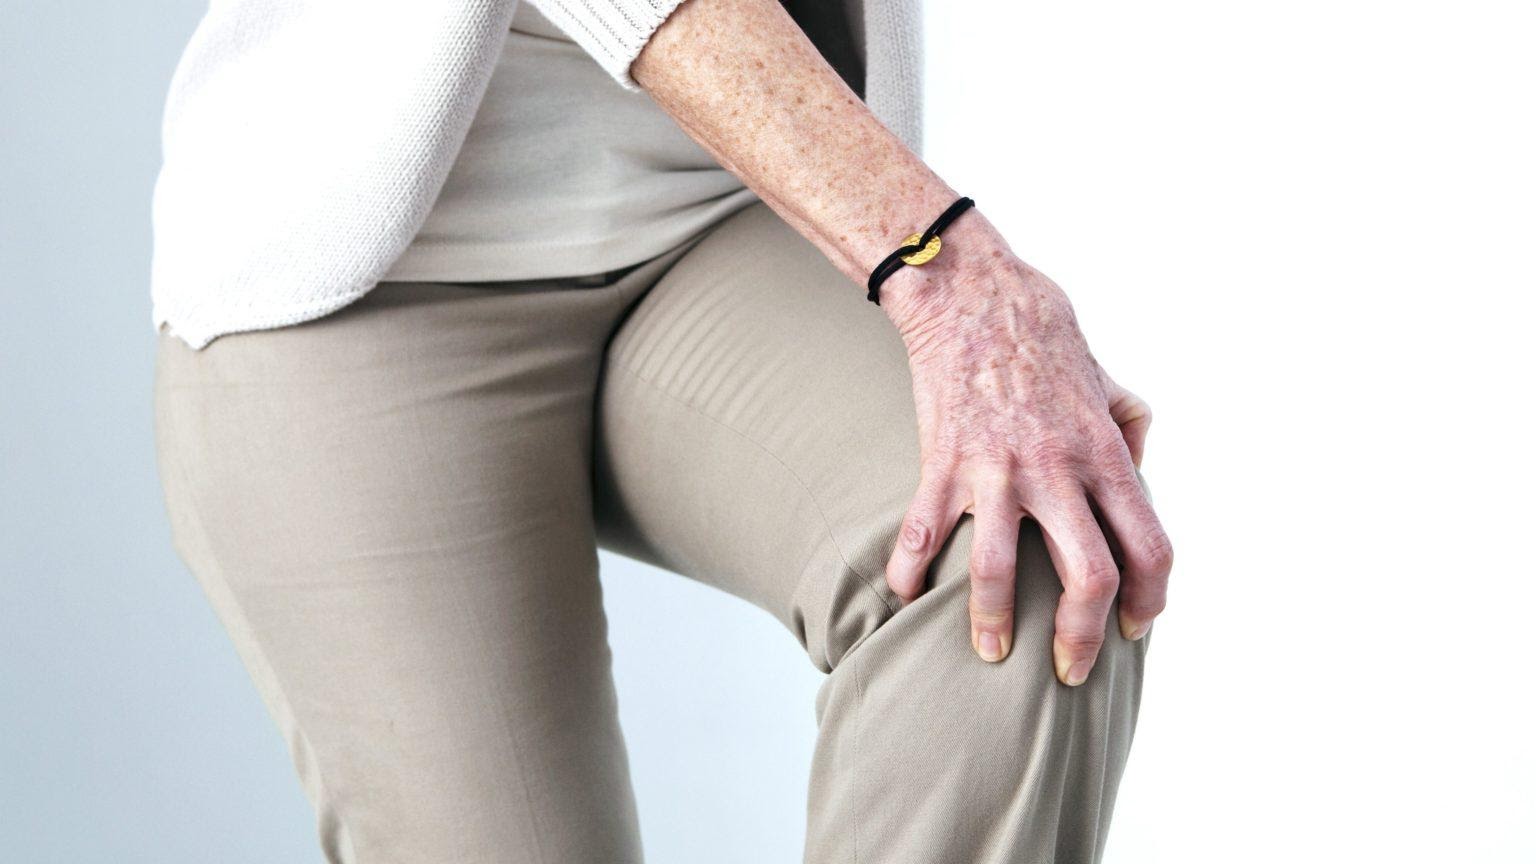 https://ortomed-clinic.ru/wp-content/uploads/2021/01/arthritis-knee-reliefs-pain-1536x864.jpg